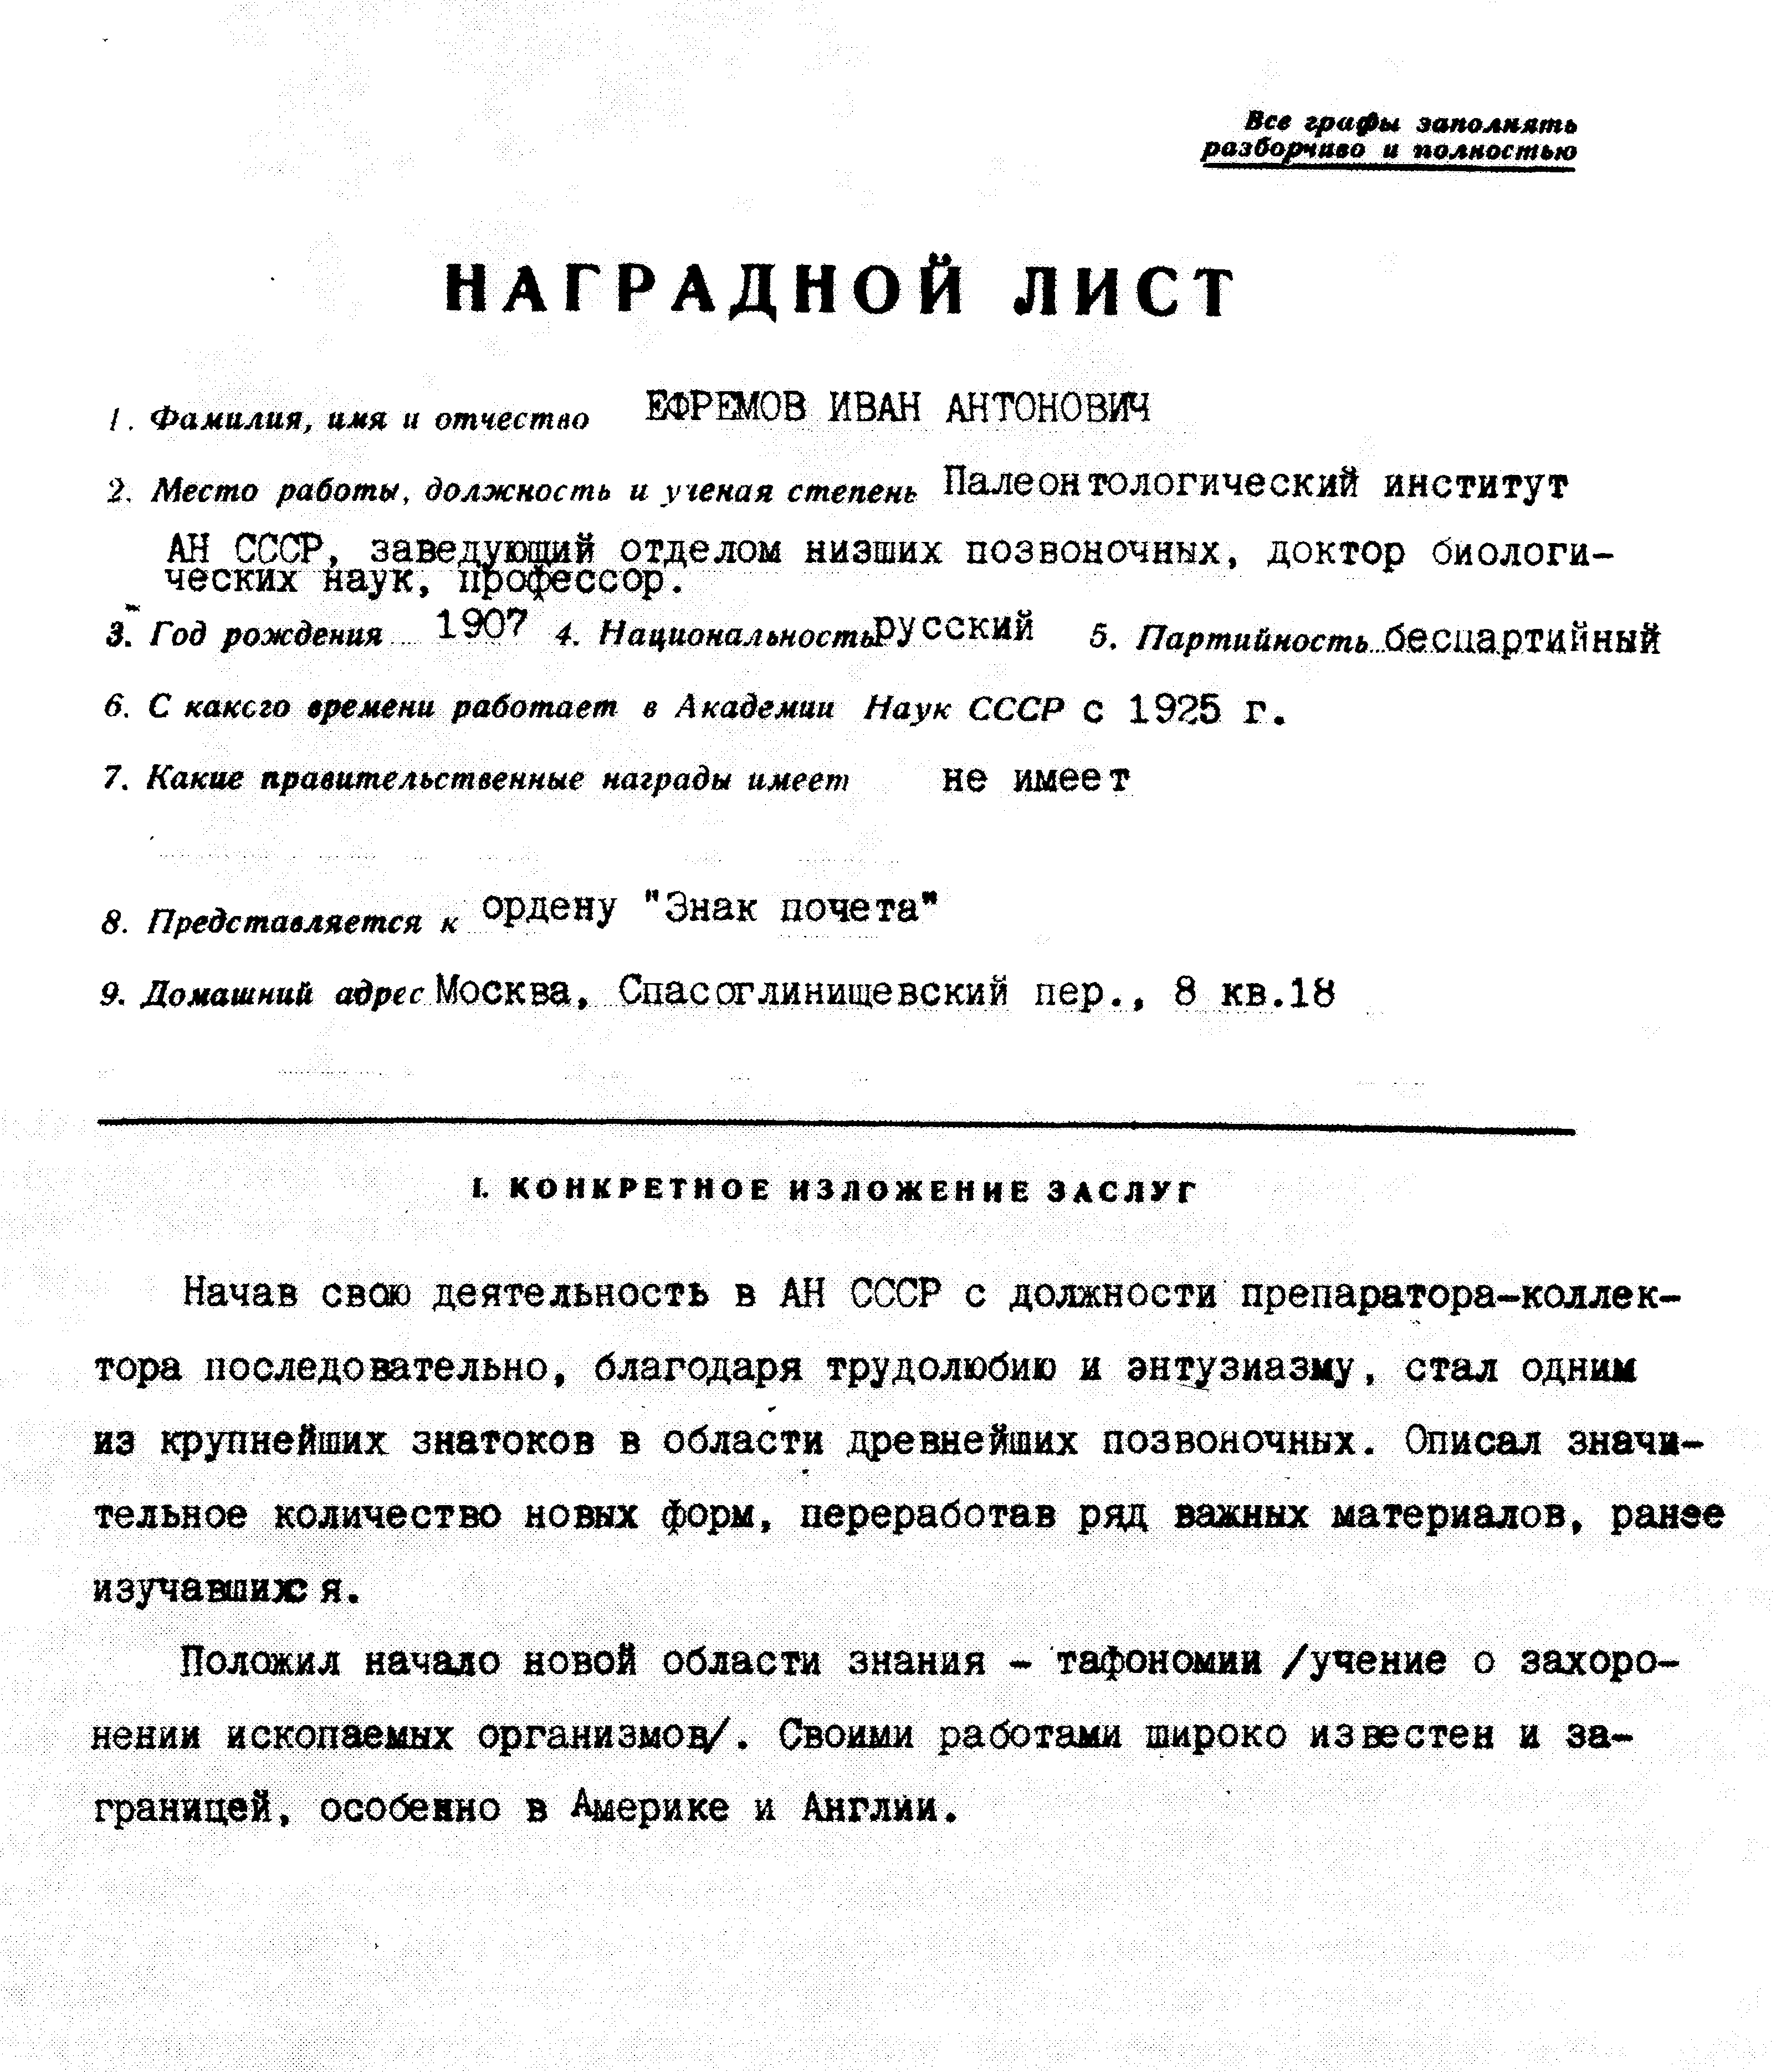 Наградной лист И.А. Ефремова (1945 г.)